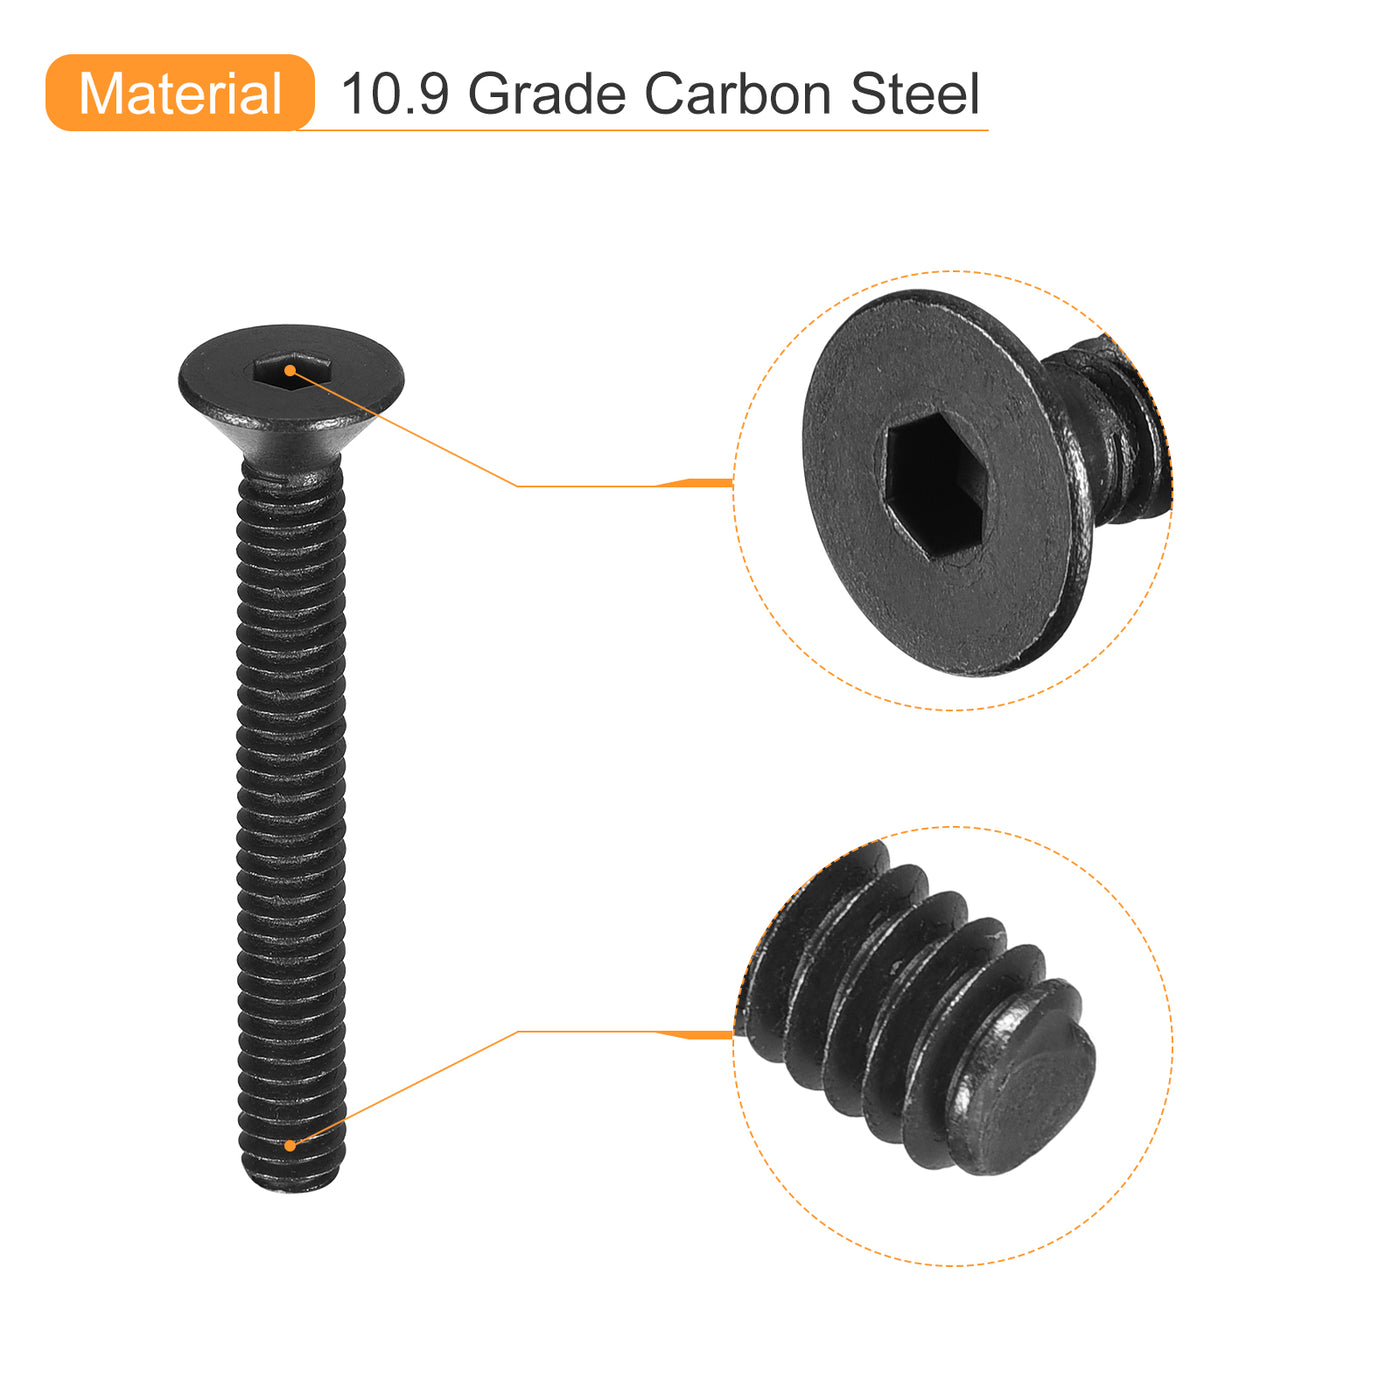 uxcell Uxcell #8-32x1-1/4" Flat Head Socket Cap Screws, 10.9 Grade Carbon, Black, 10pcs